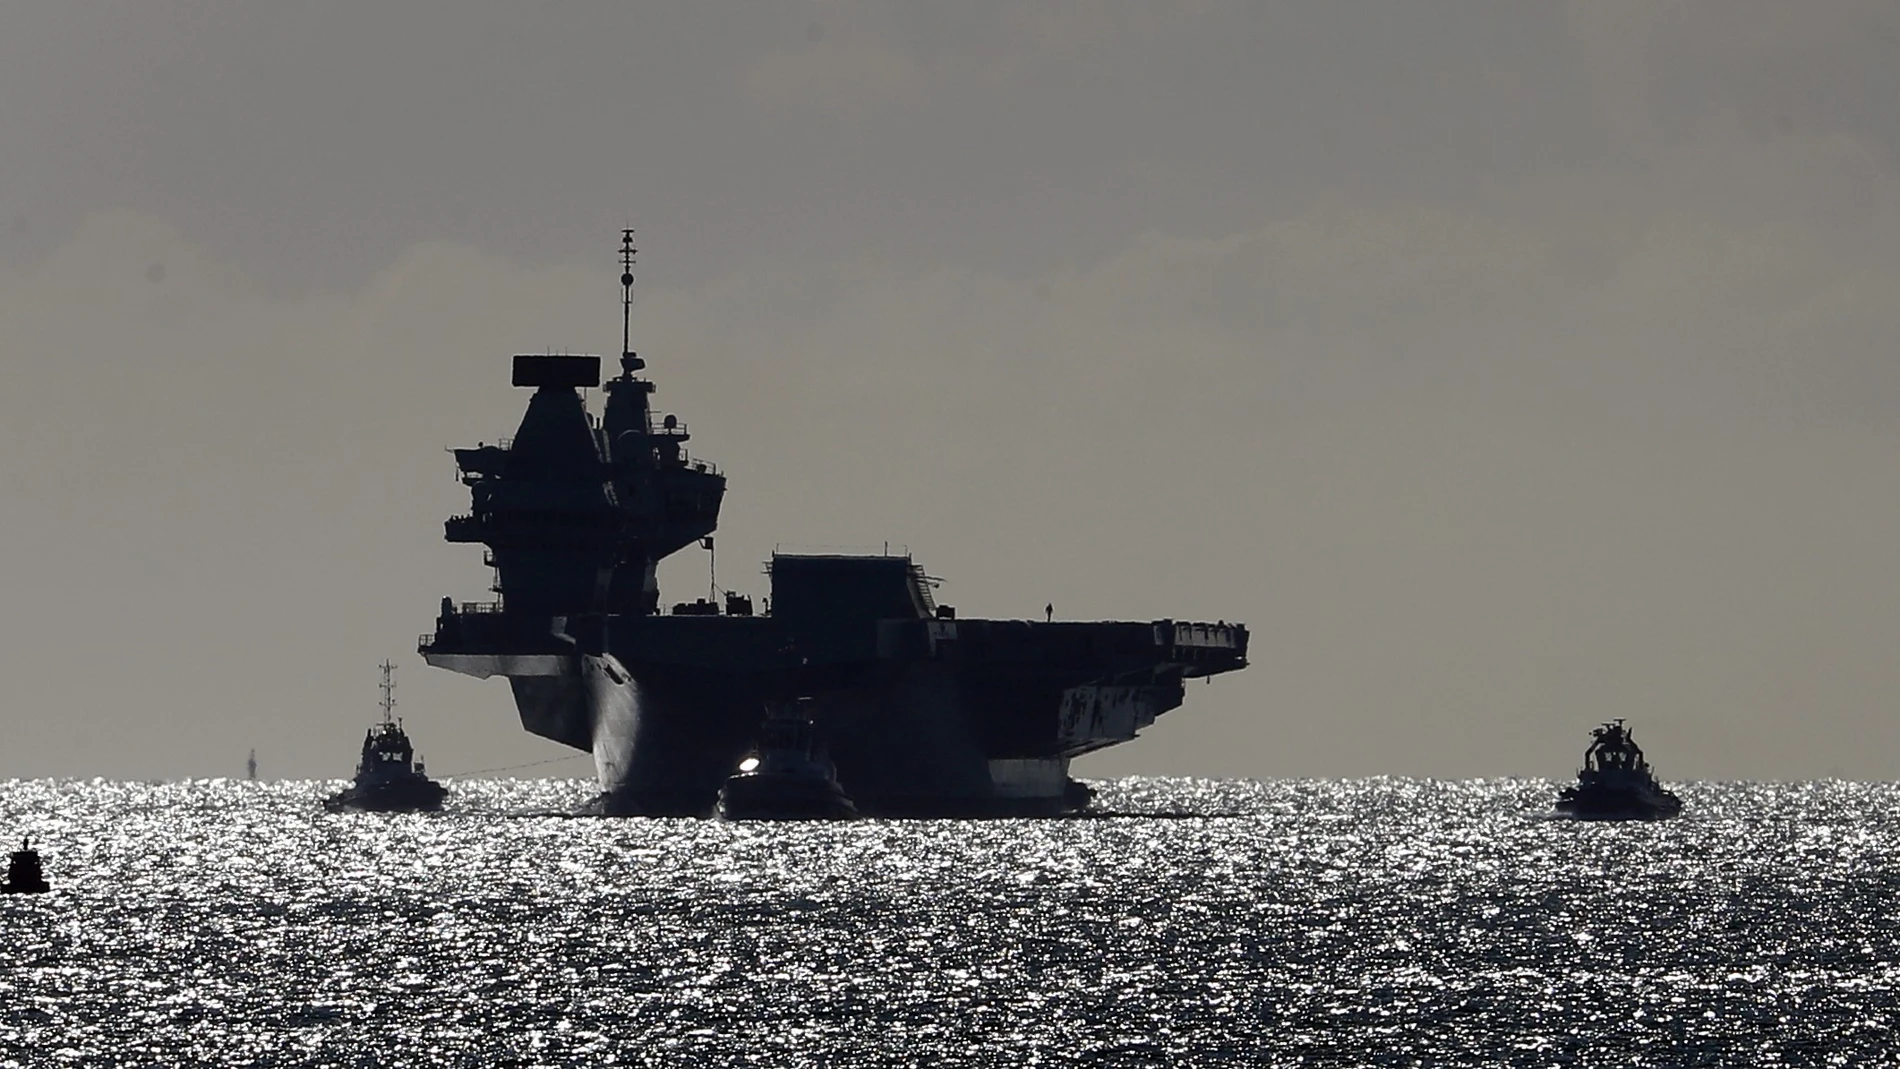 El portaaviones HMS Queen Elizabeth saldrá el próximo mes hacia Asia